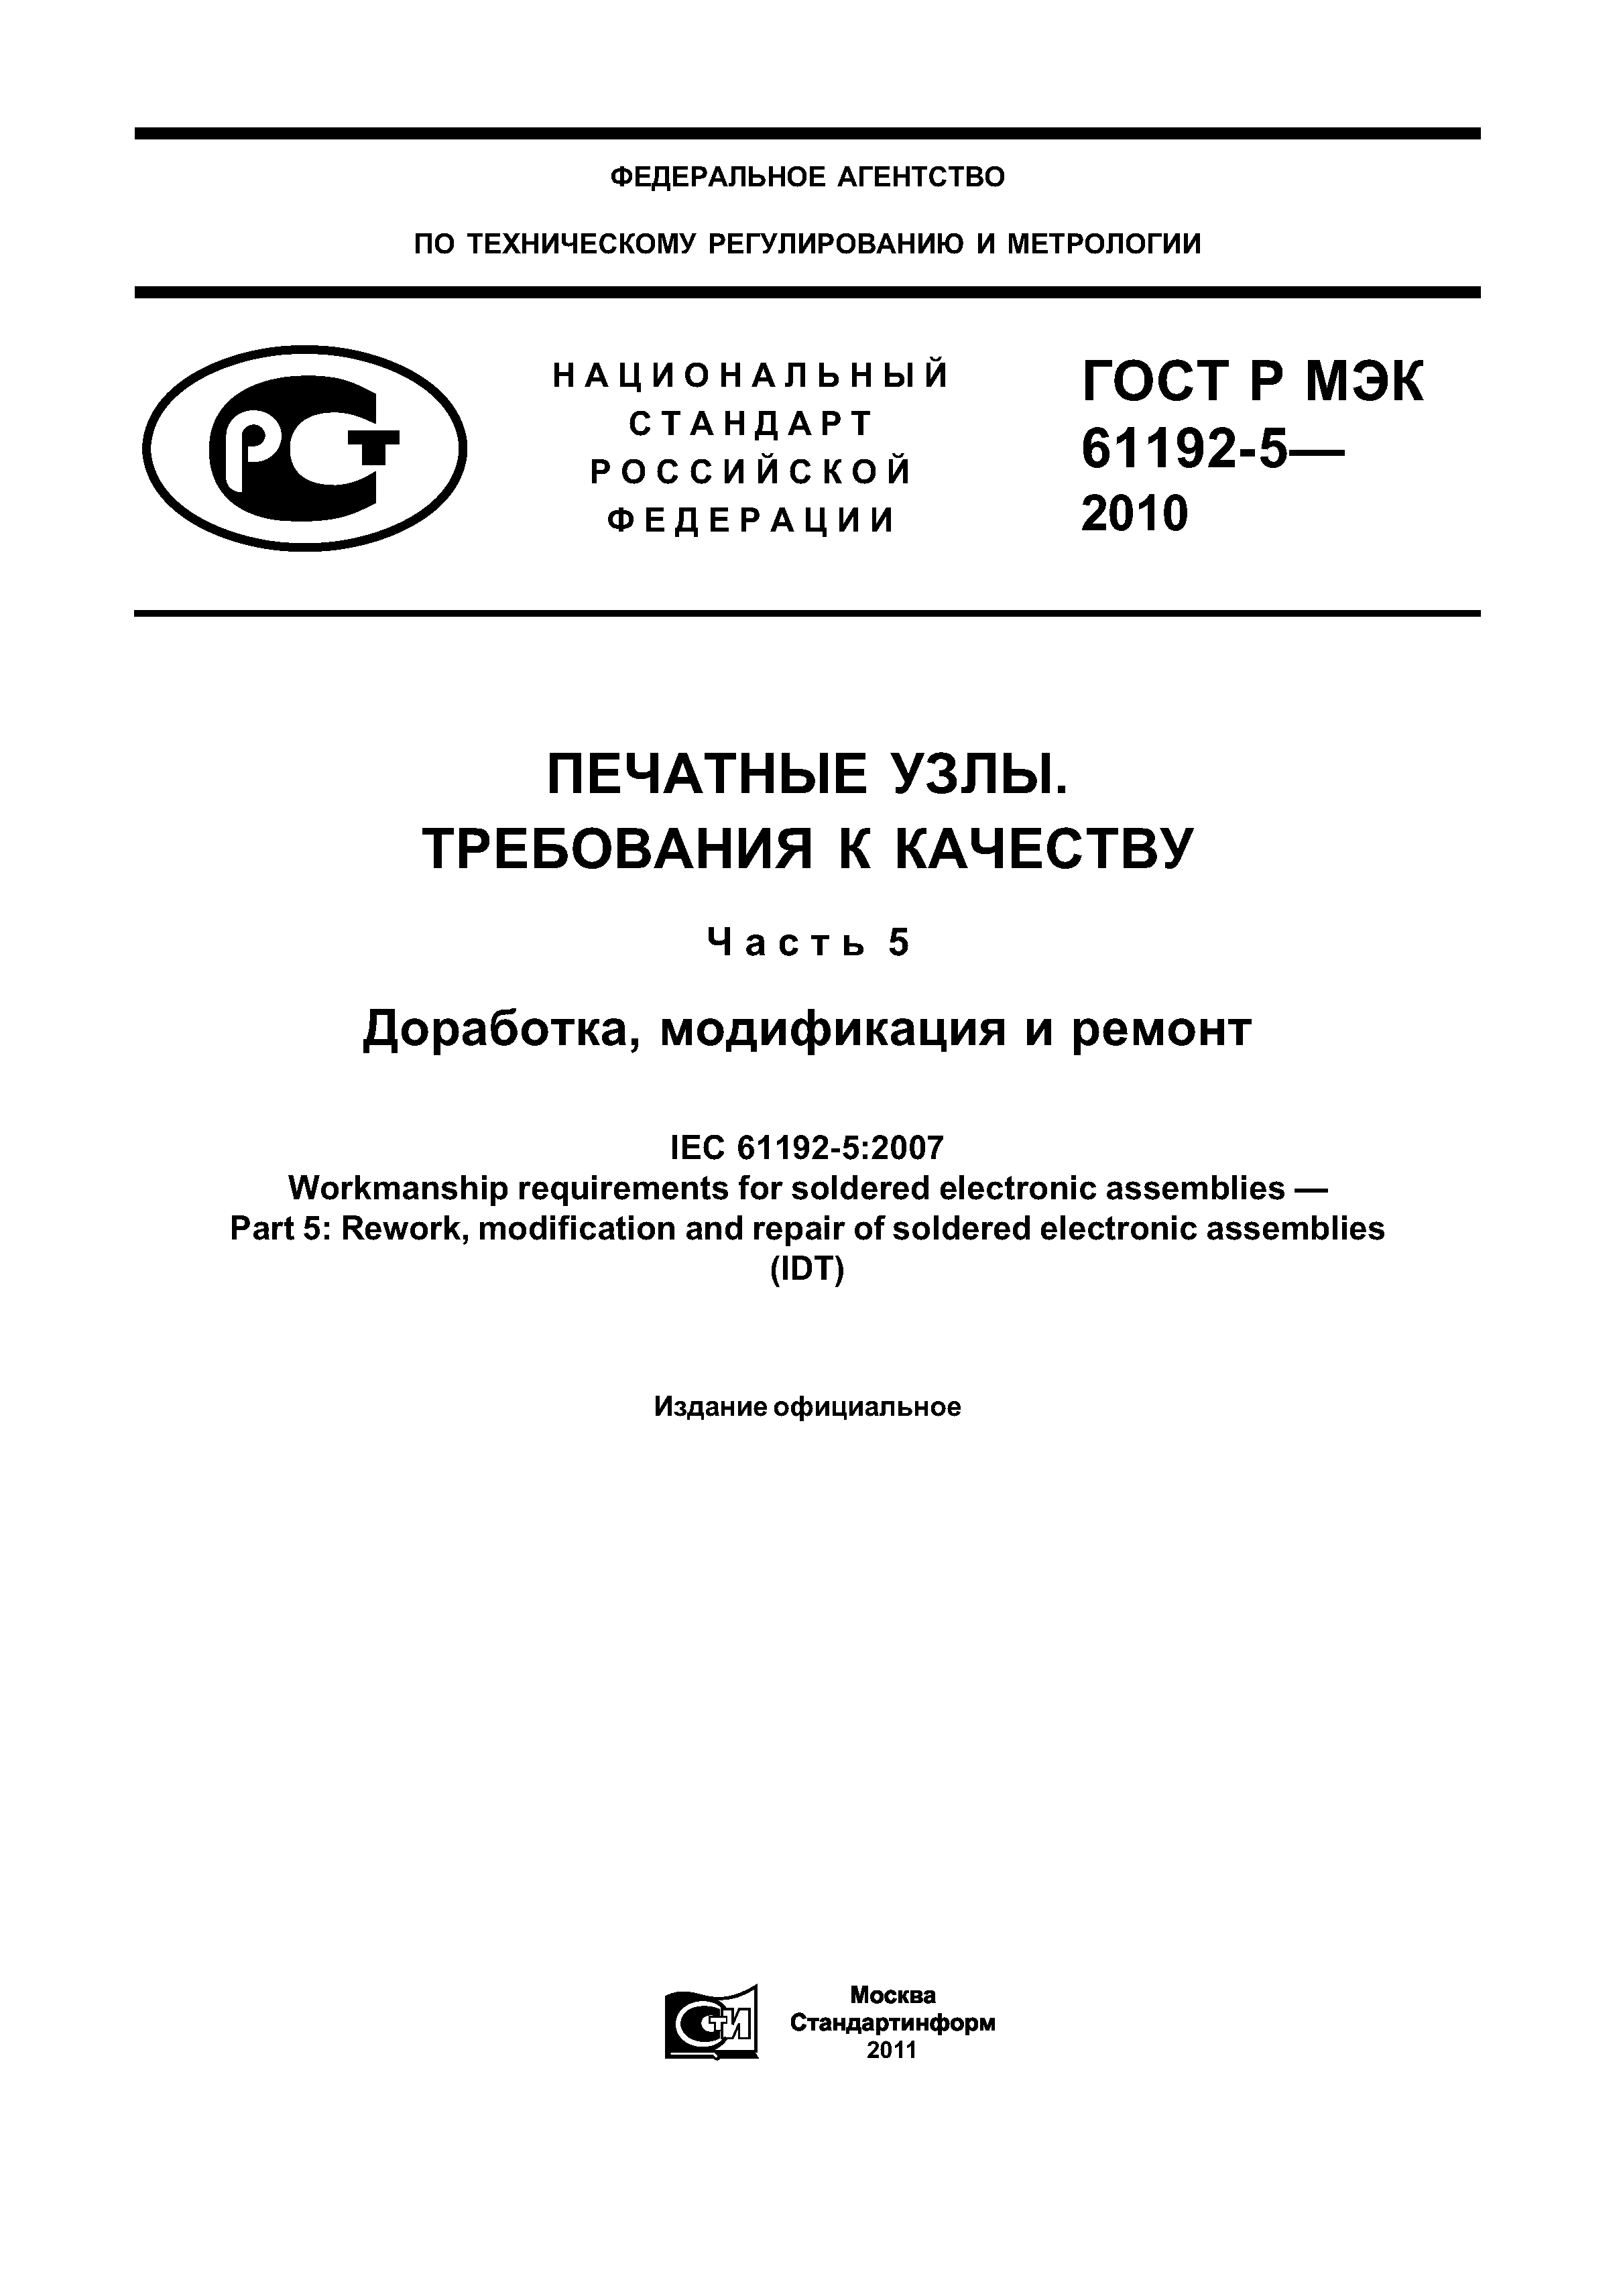 ГОСТ Р МЭК 61192-5-2010